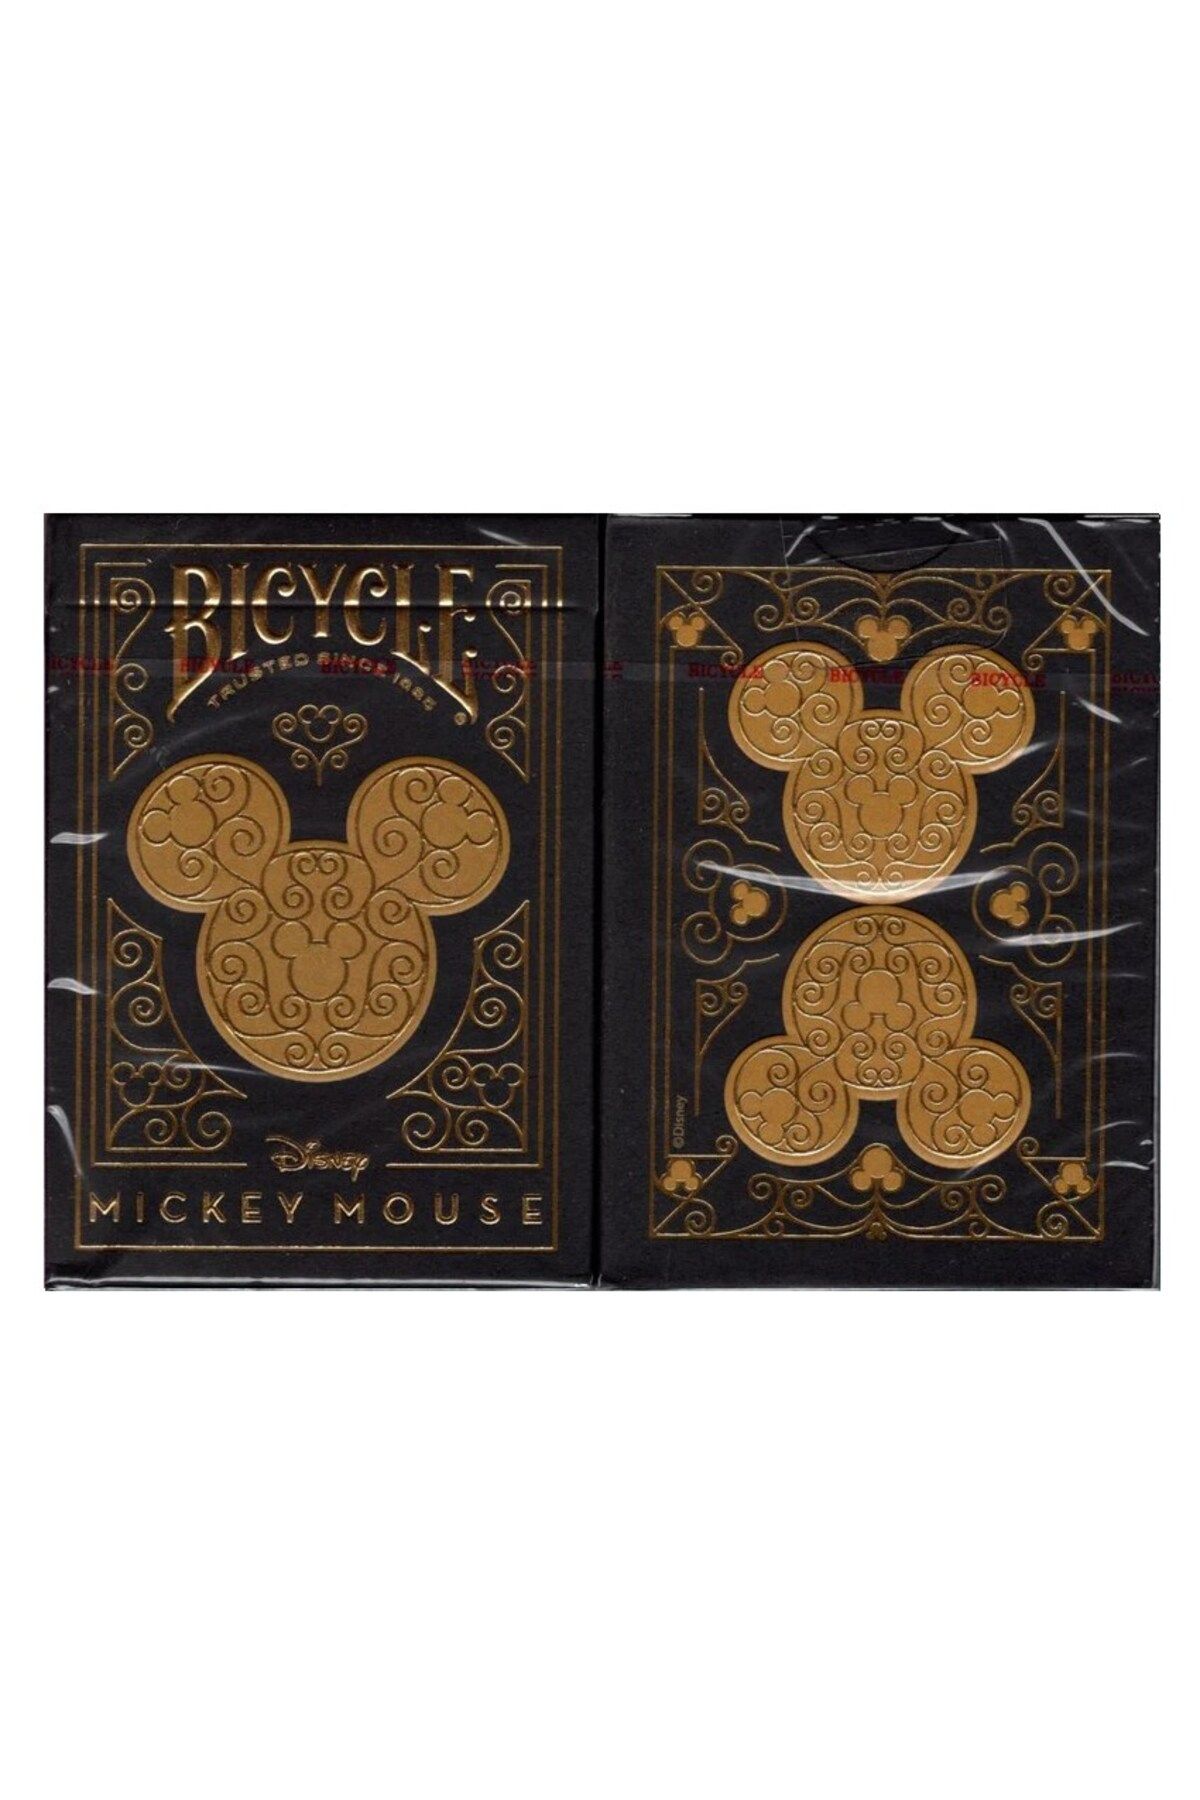 OyuncaklarÜlkesi Bicycle Disney Mickey Mouse Black and Gold Premium Oyun Kağıdı iskambil Kartları